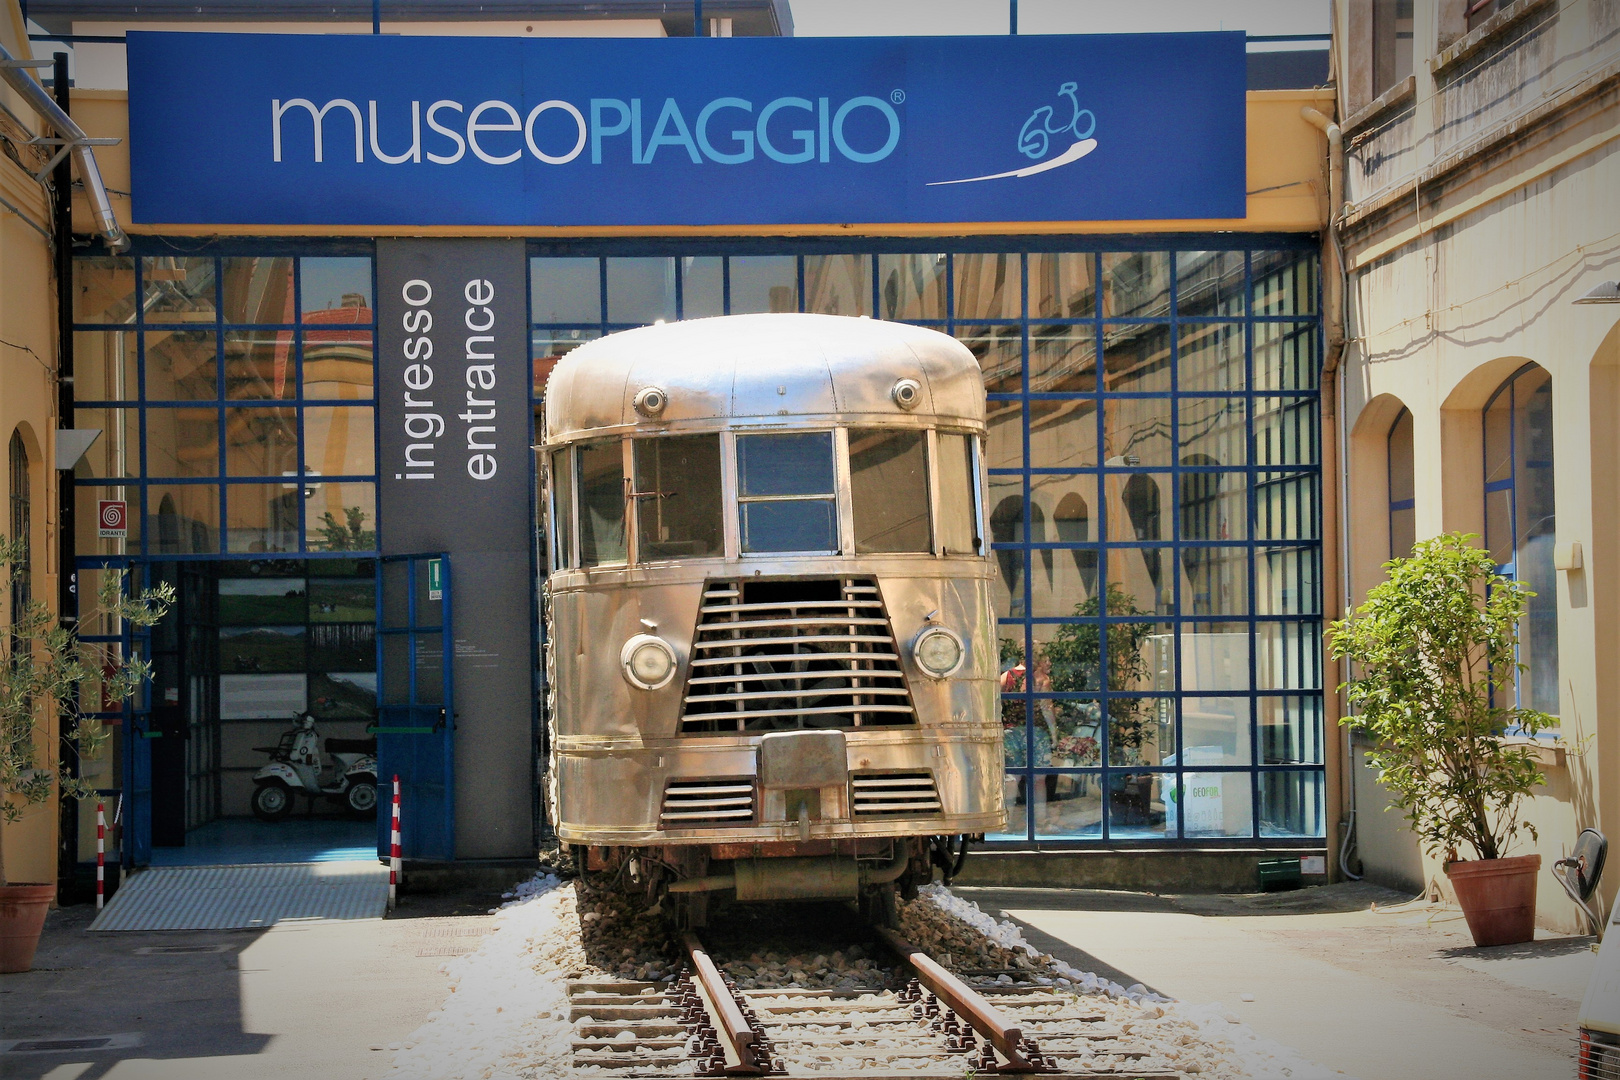 Museo Piaggio in Pontedera/Toscana